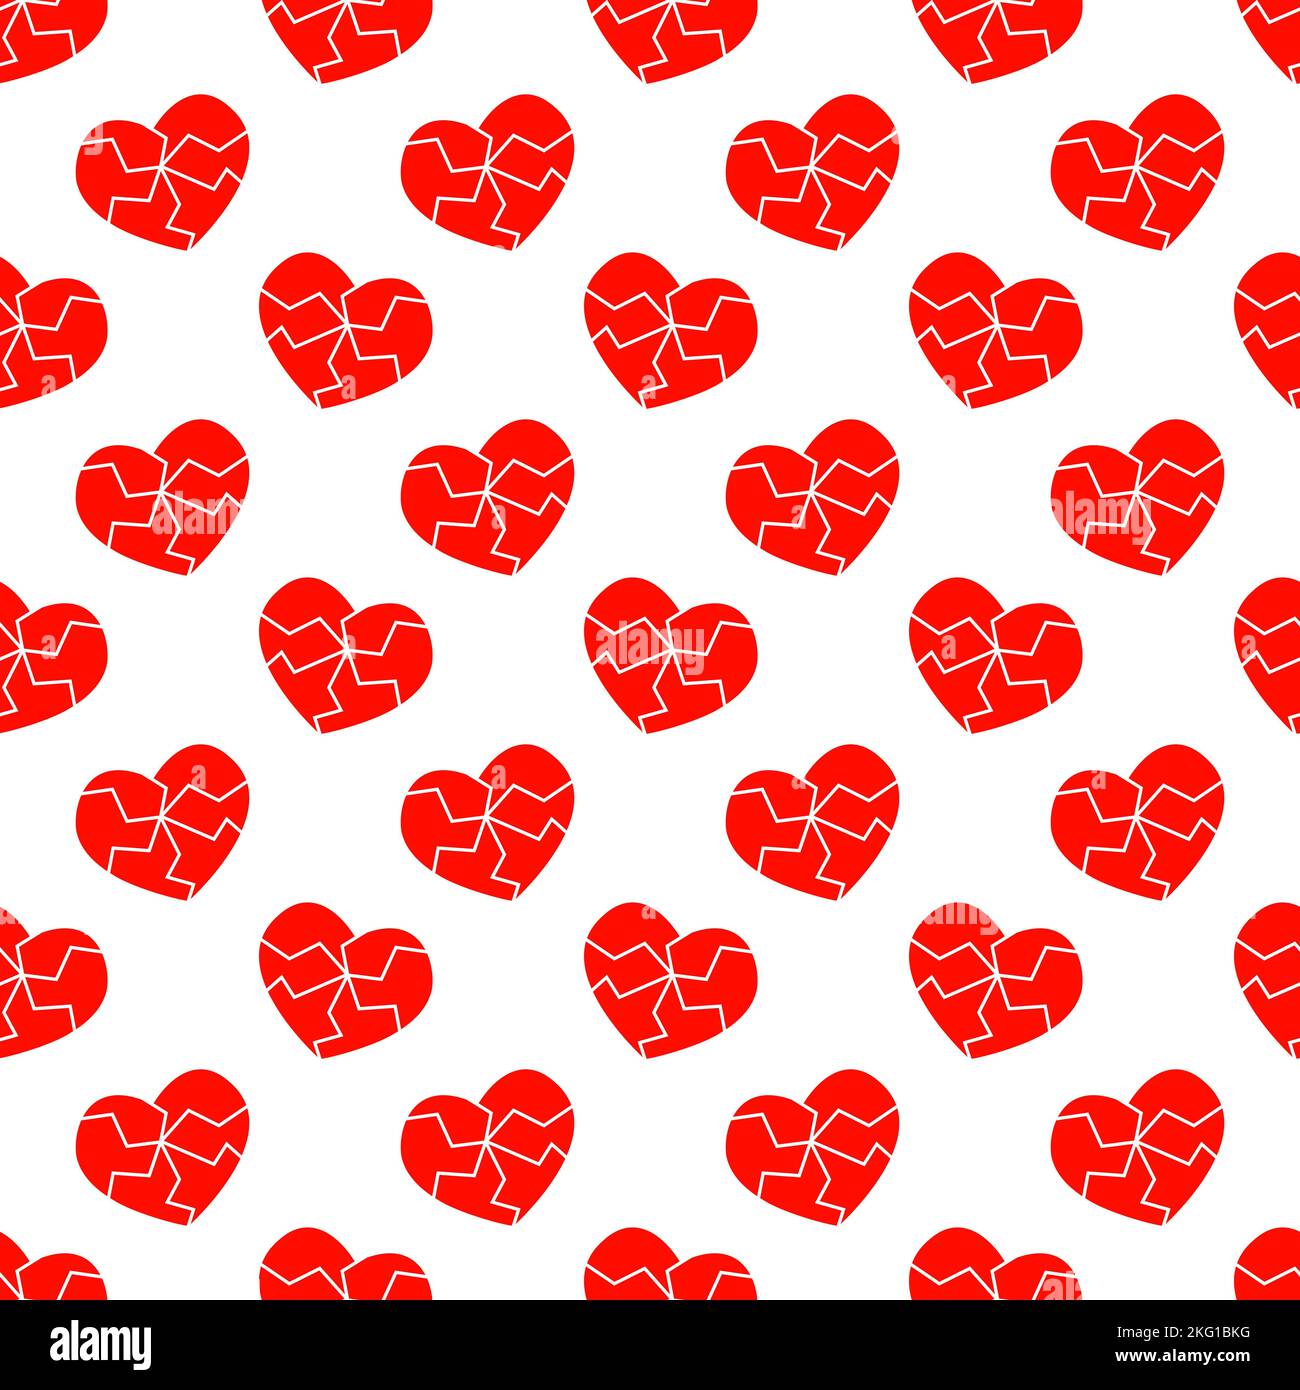 Rote rissige Herz Symbole nahtlose Muster. Symbol für Herzschmerz, Scheidung, Abschied, Herzkrankheit, Infarkt Hintergrund. Vektorgrafik flach. Stock Vektor